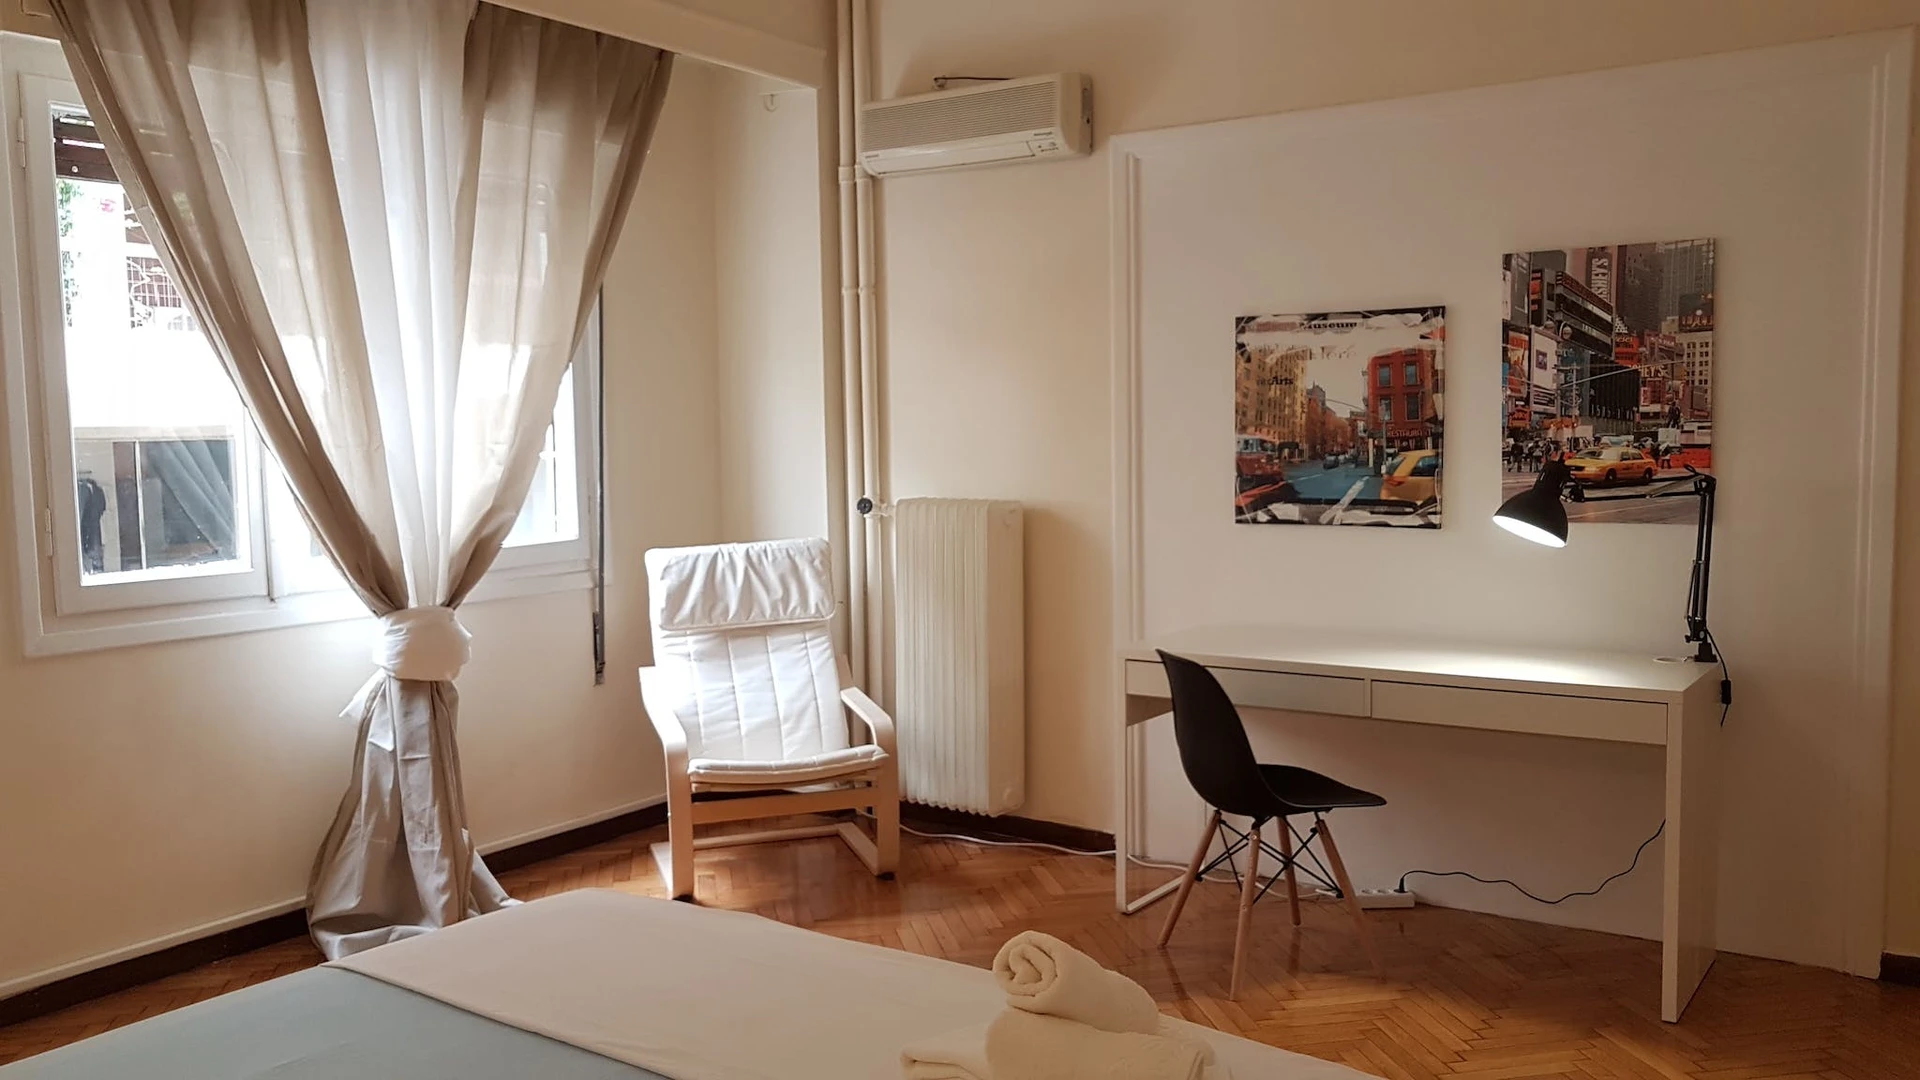 Luminosa stanza condivisa in affitto a Atene